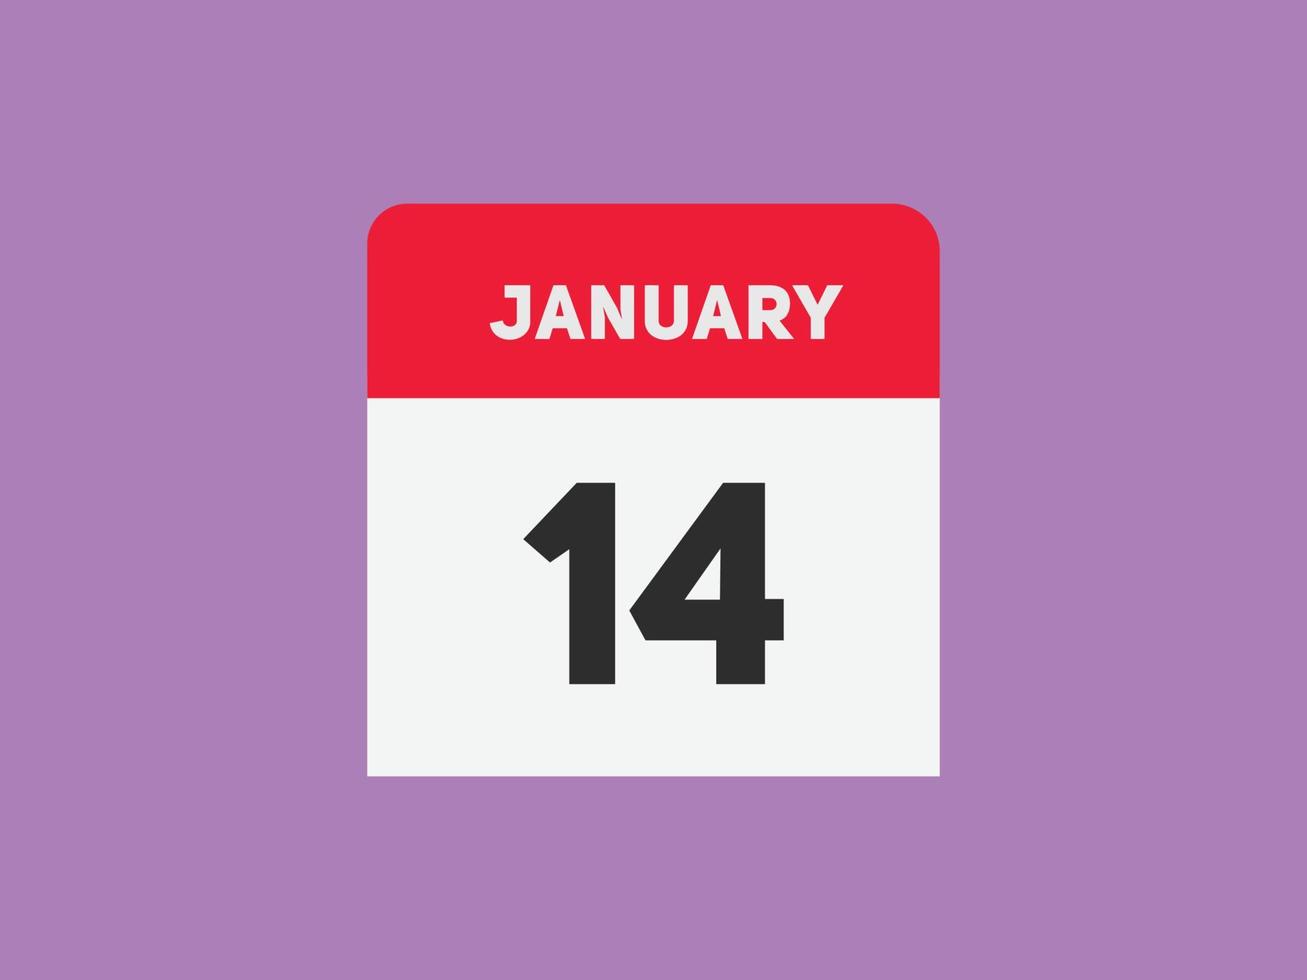 14. januar kalender erinnerung. 14. januar tägliche kalendersymbolvorlage. Kalender 14. Januar Icon-Design-Vorlage. Vektor-Illustration vektor